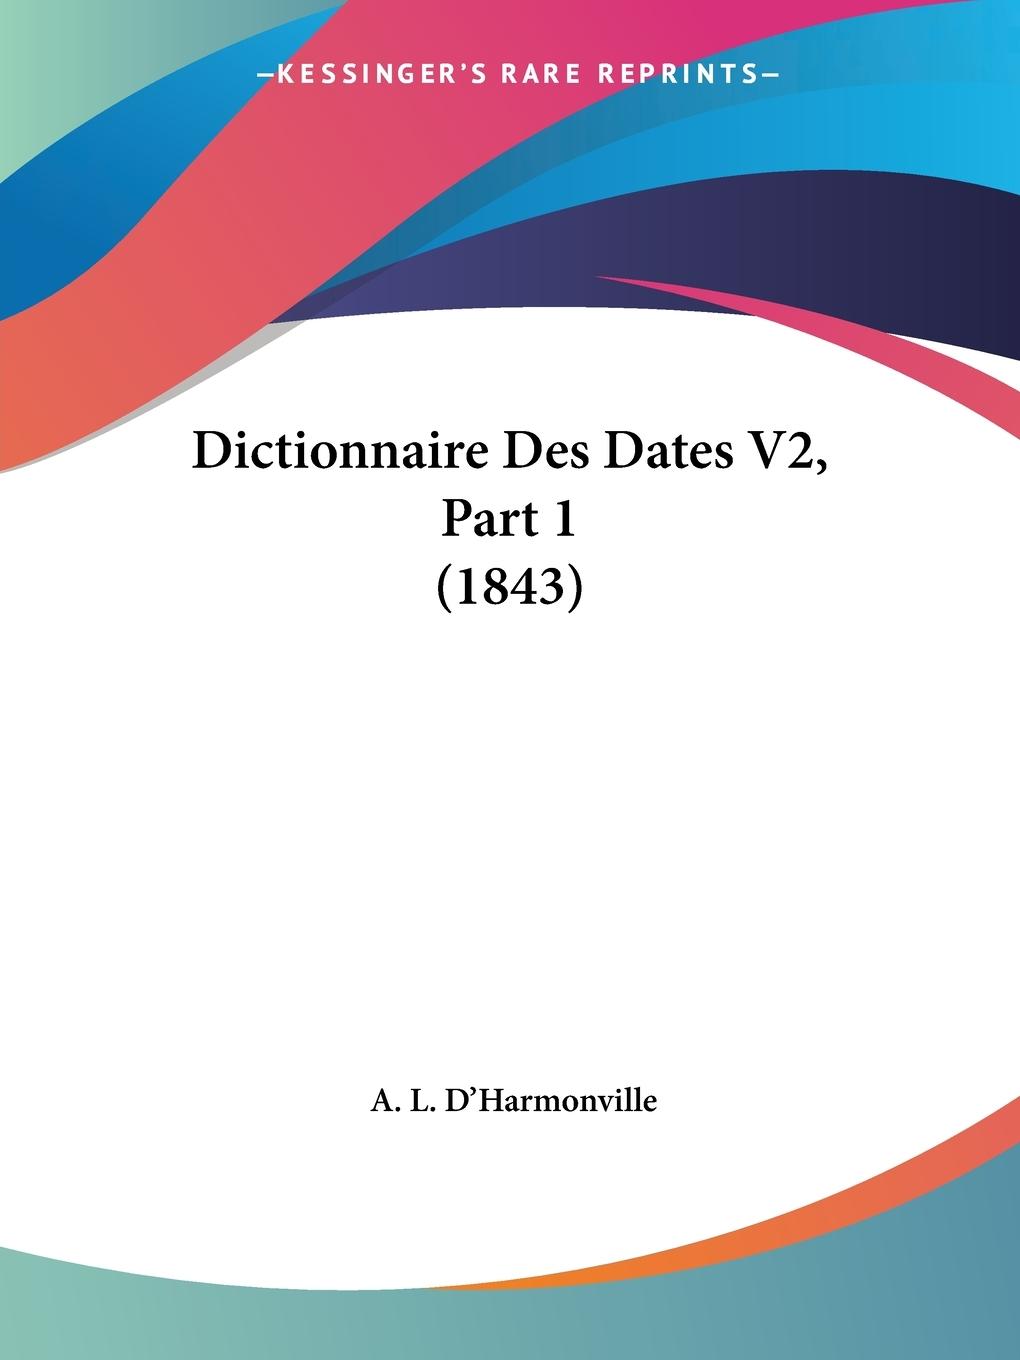 Dictionnaire Des Dates V2, Part 1 (1843) - D Harmonville, A. L.